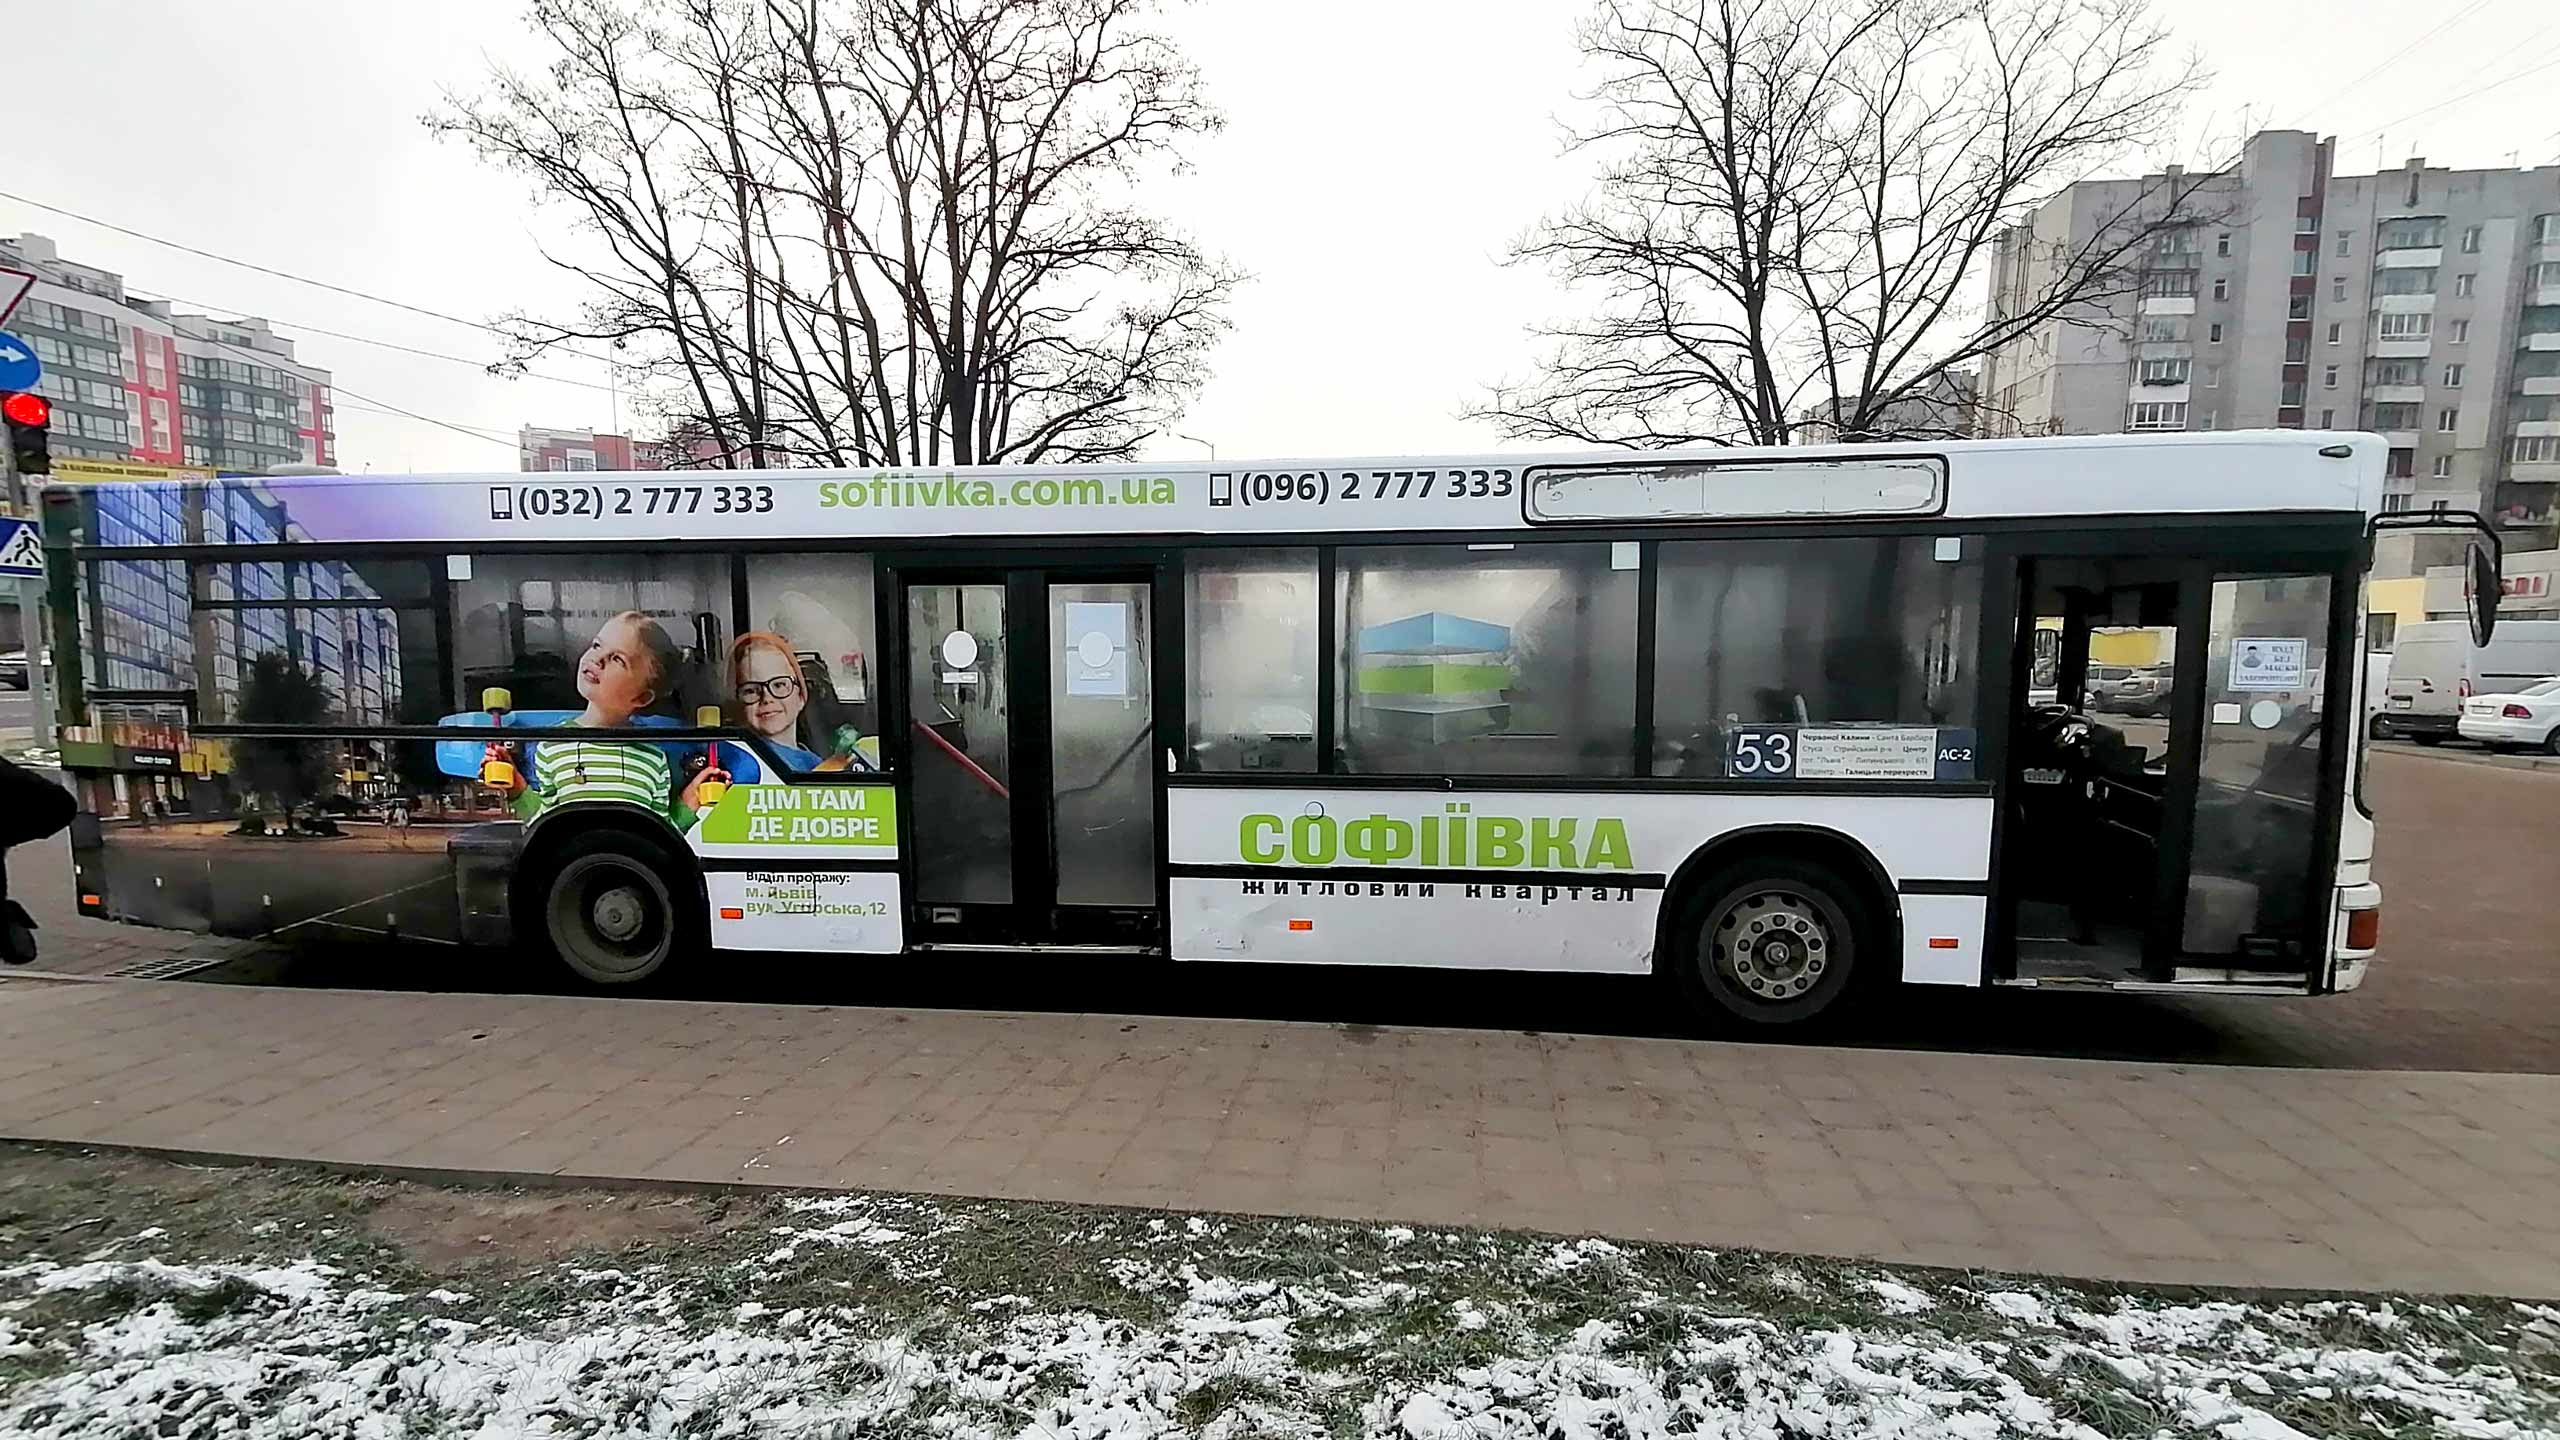 реклама туризма на автобусах